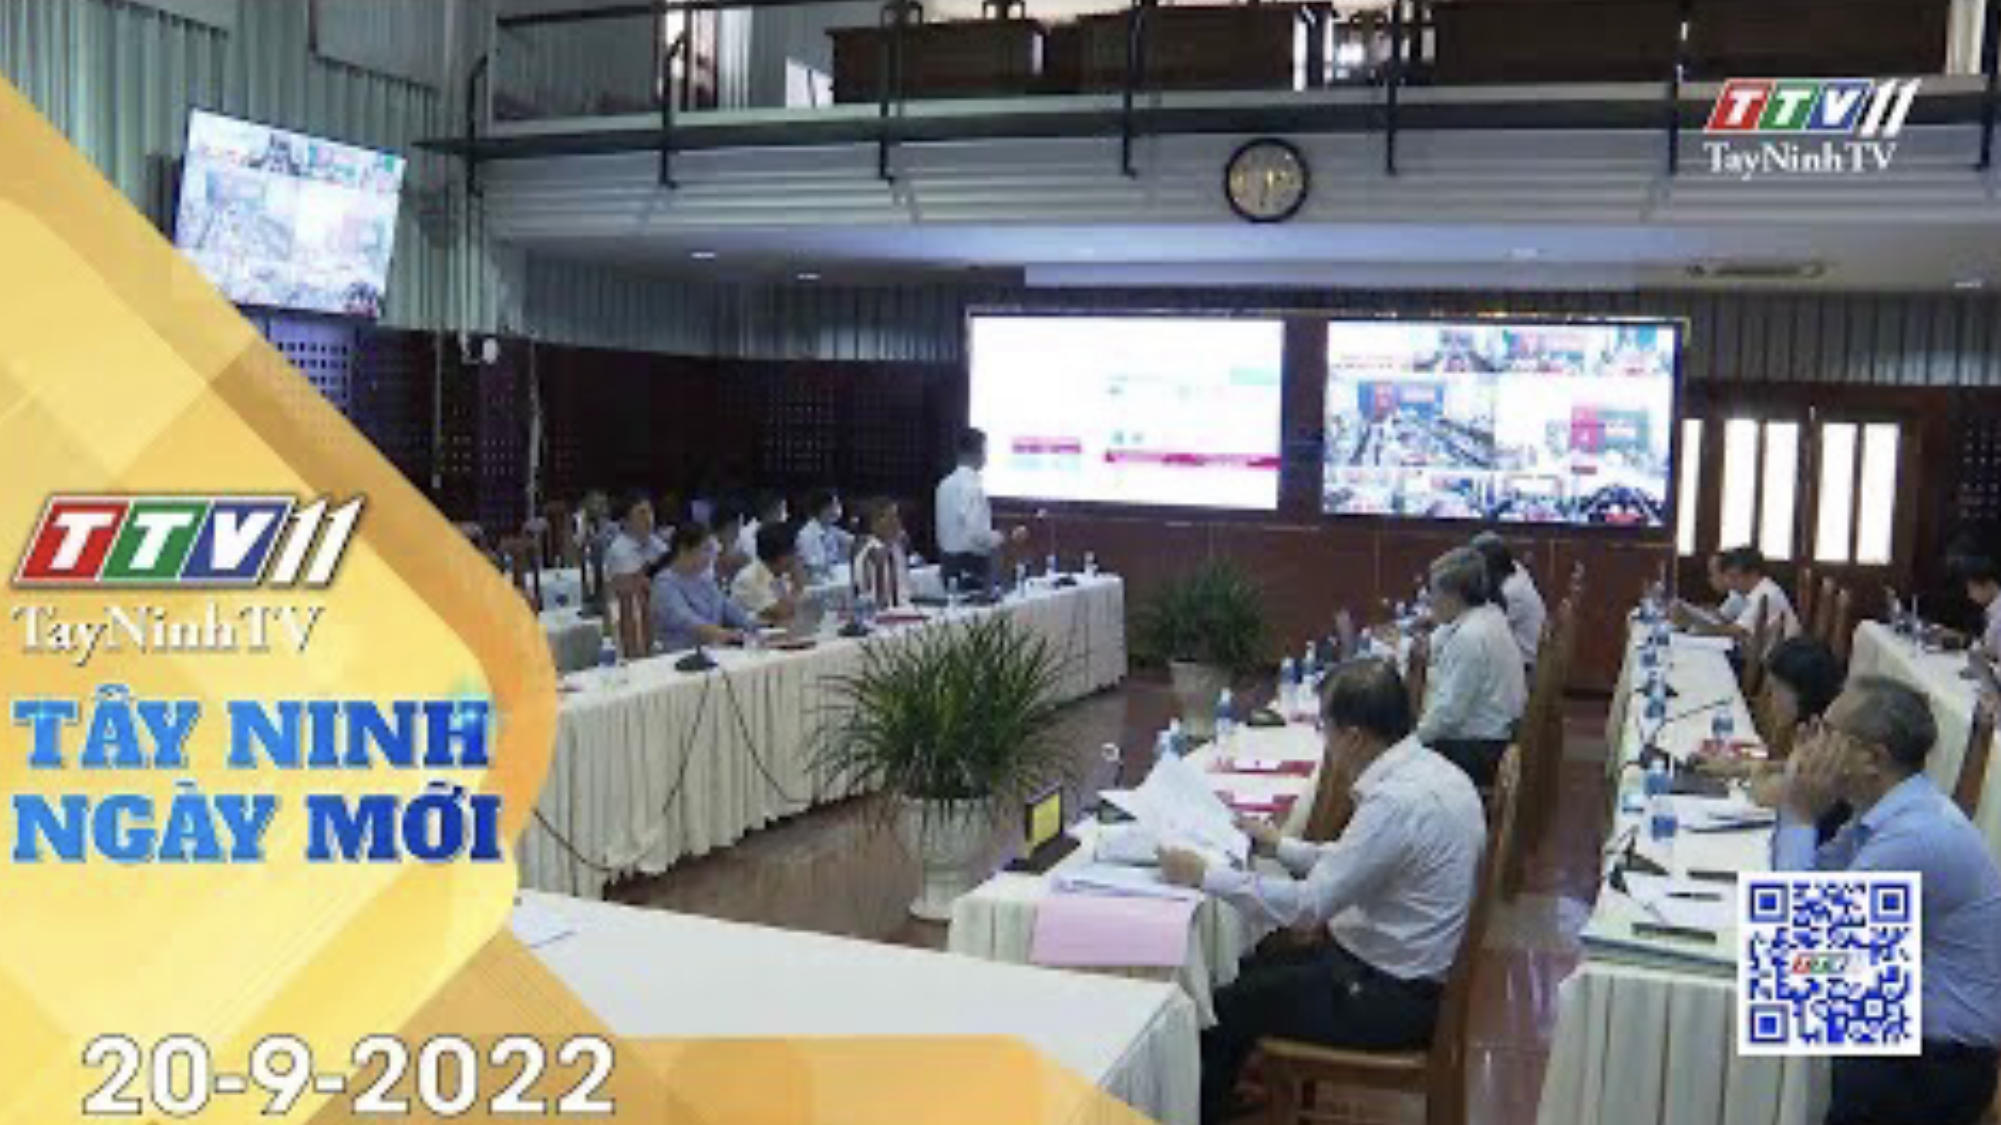 Tây Ninh ngày mới 20-9-2022 | Tin tức hôm nay | TayNinhTV